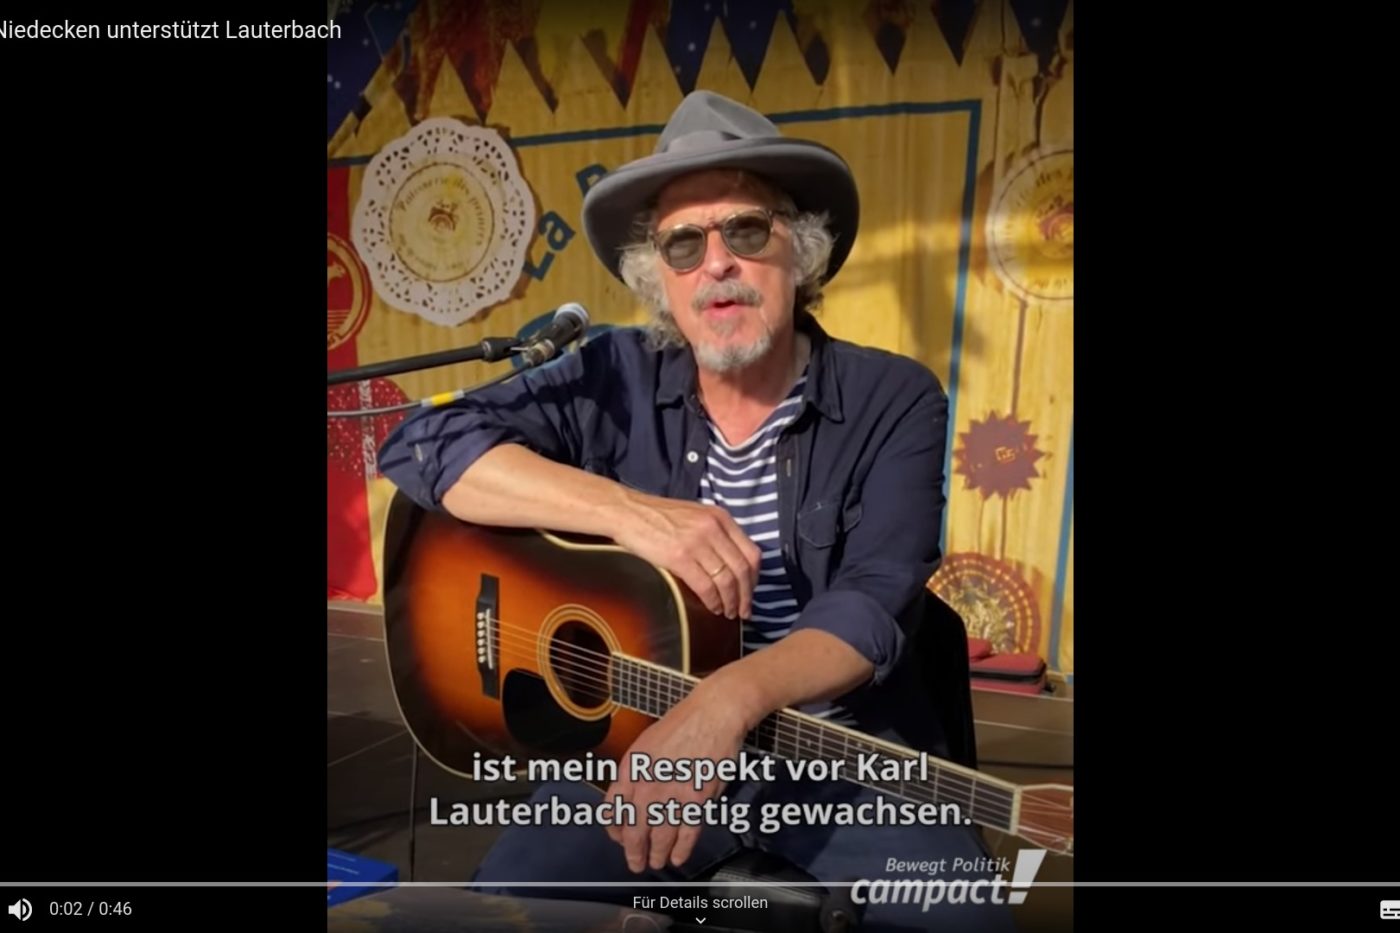 Screenshot aus dem Video "Wolfgang Niedecken unterstützt Lauerbach". Wolfgang Niedecken sitzt mit einer Gitarre auf dem Schoß vor einem Mikrofon und spricht in die Kamera